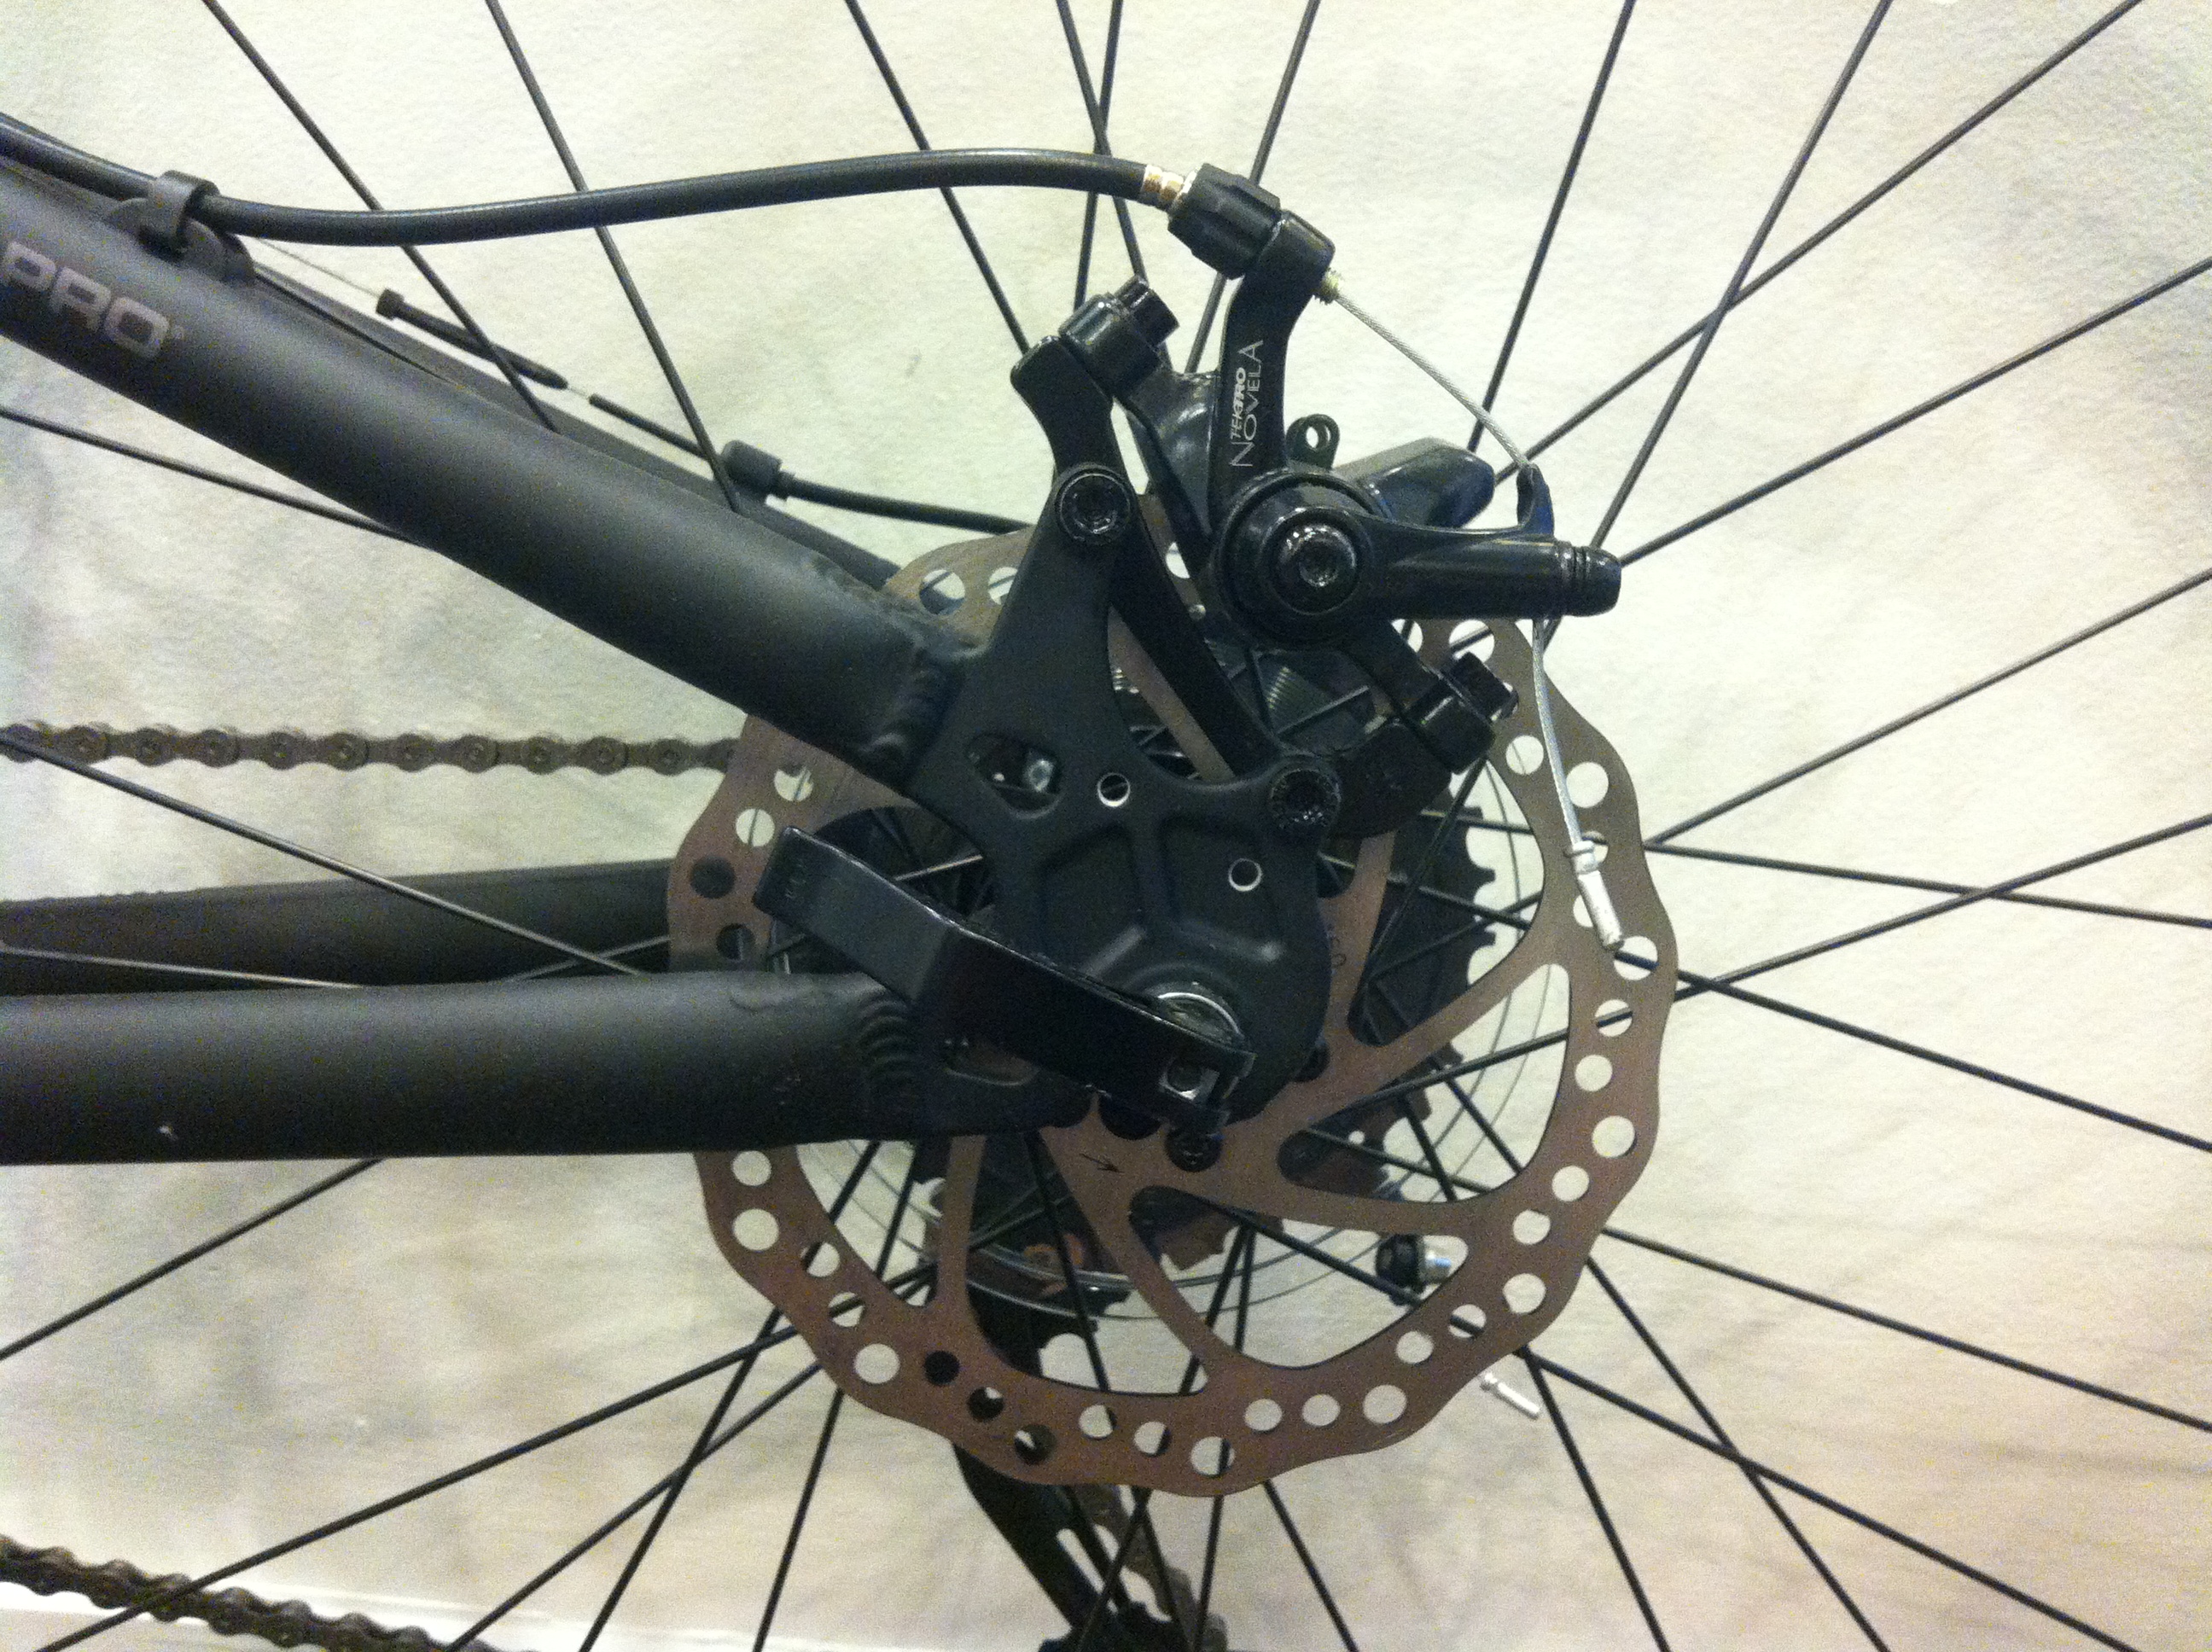 installing disk brakes on bike